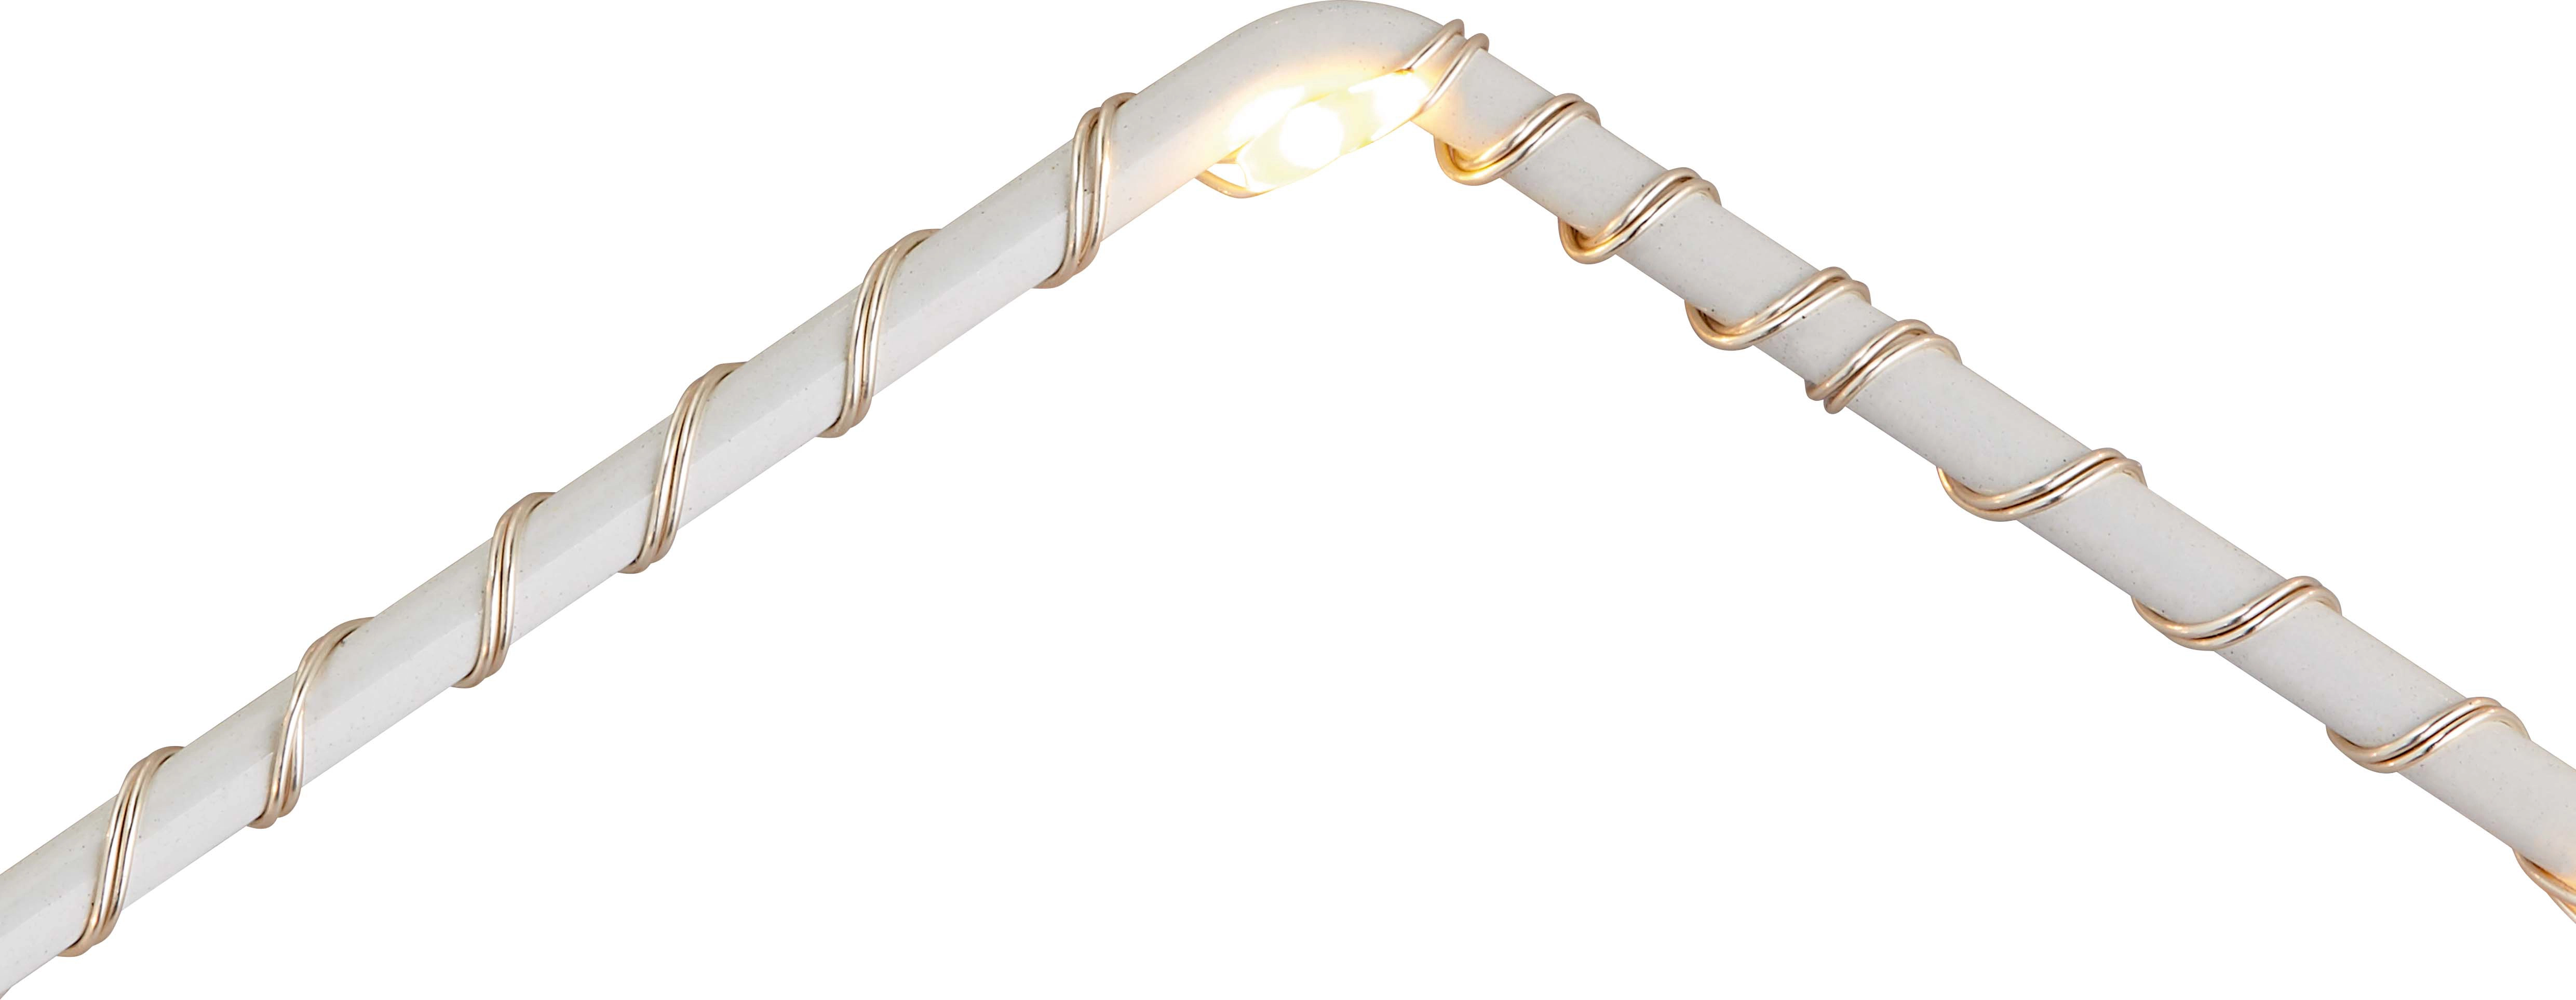 LED Deko Leuchte Metall-Stern 20 warmweiße LEDs innen kaufen bei OBI